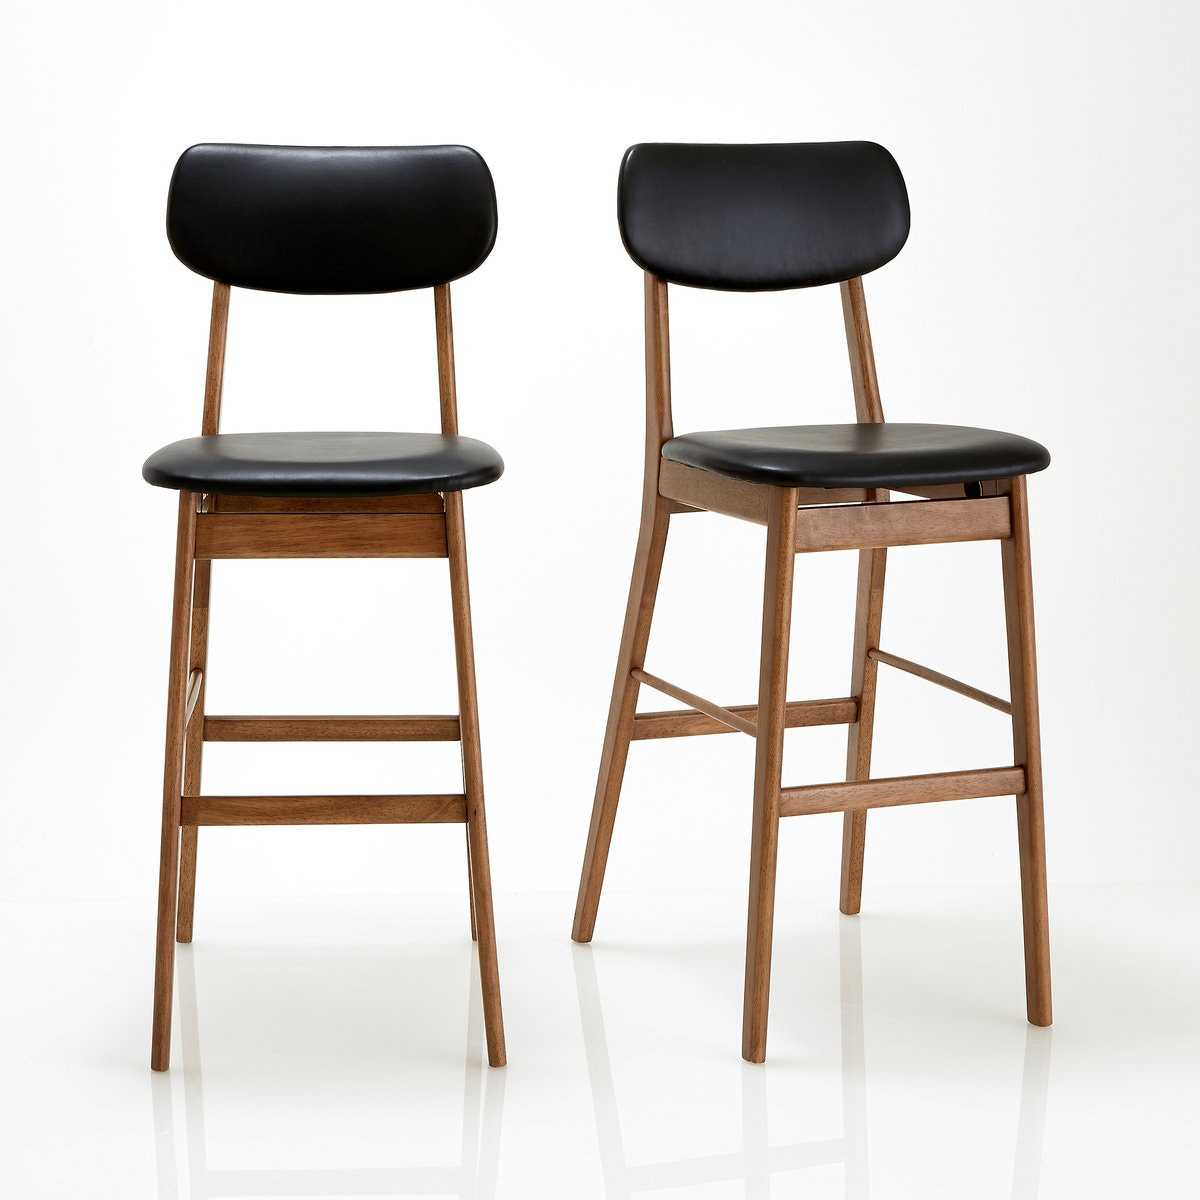 Икеа стулья: складные и раскладные кухонные табуретки ikea, пластиковый и деревянный стул со спинкой и подлокотниками, каталог и цены